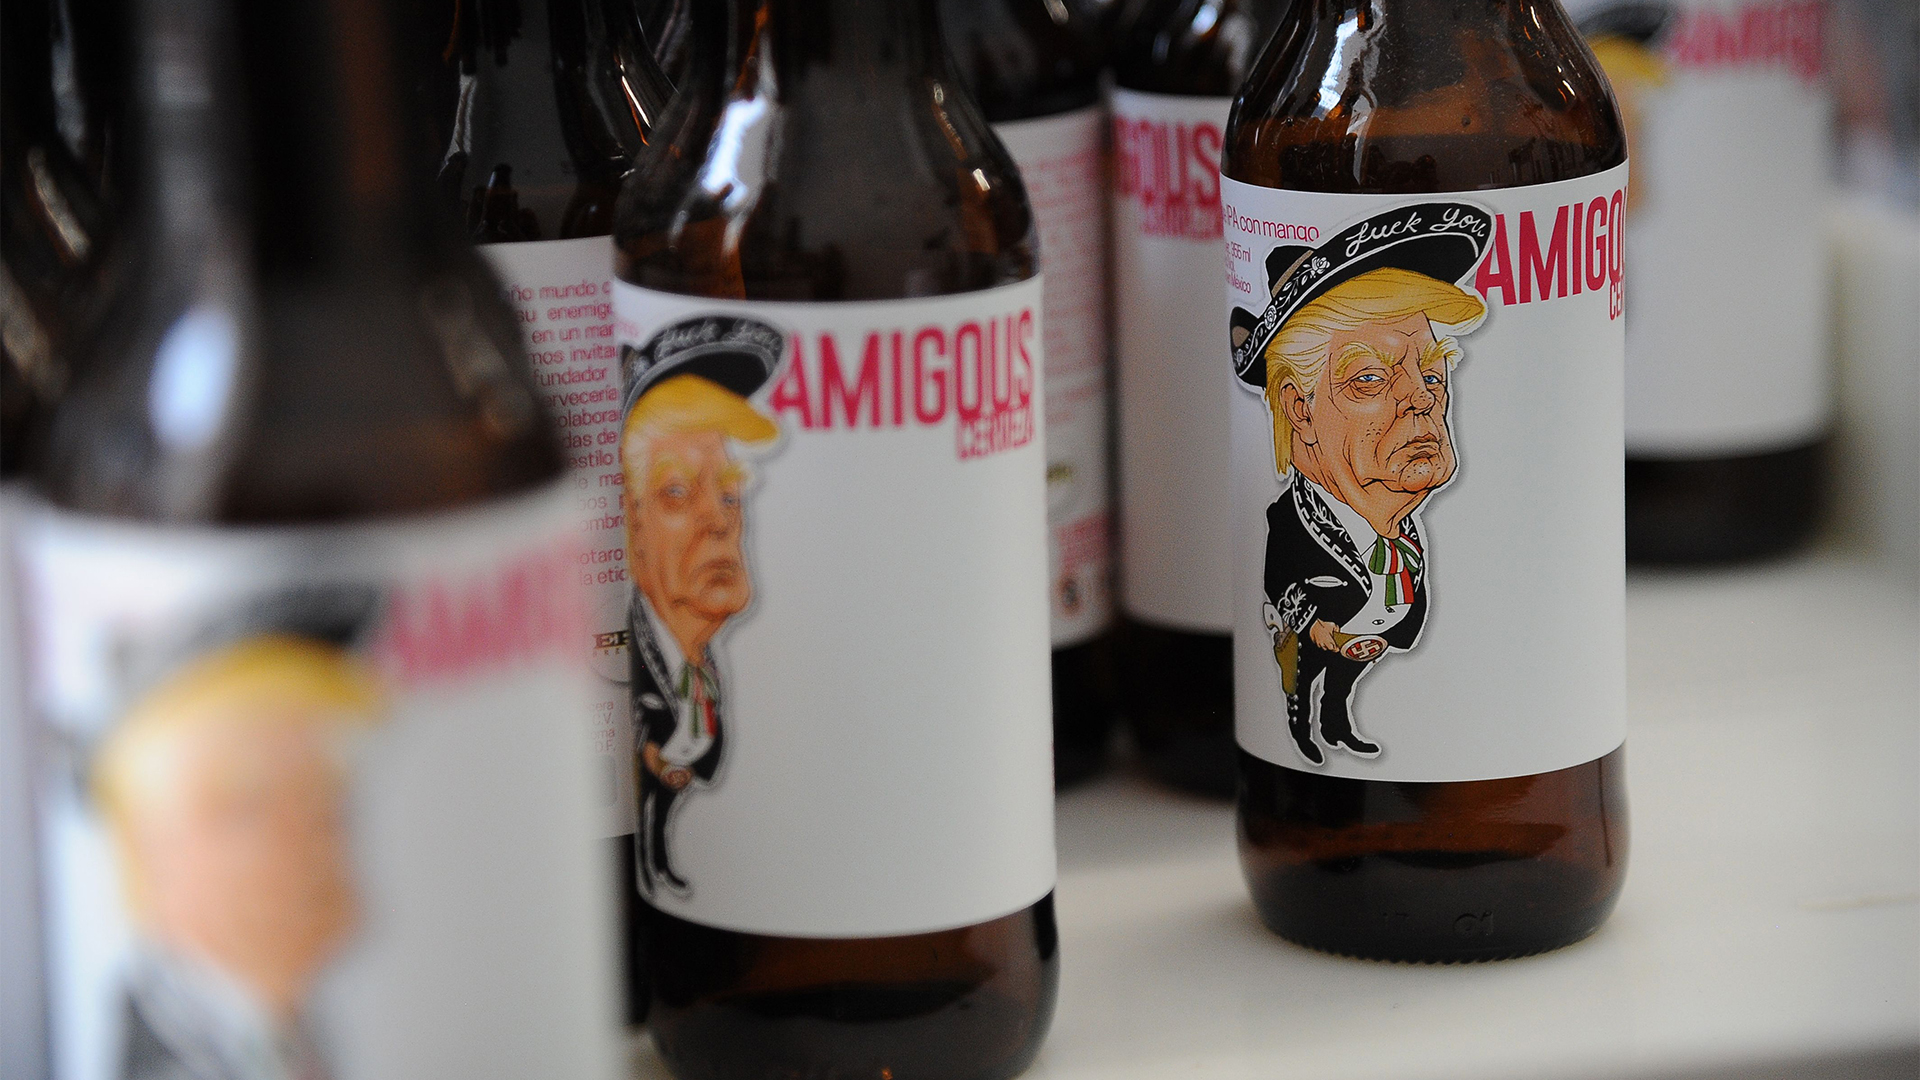 Bier mit dem Konterfei von Trump auf dem Etikett